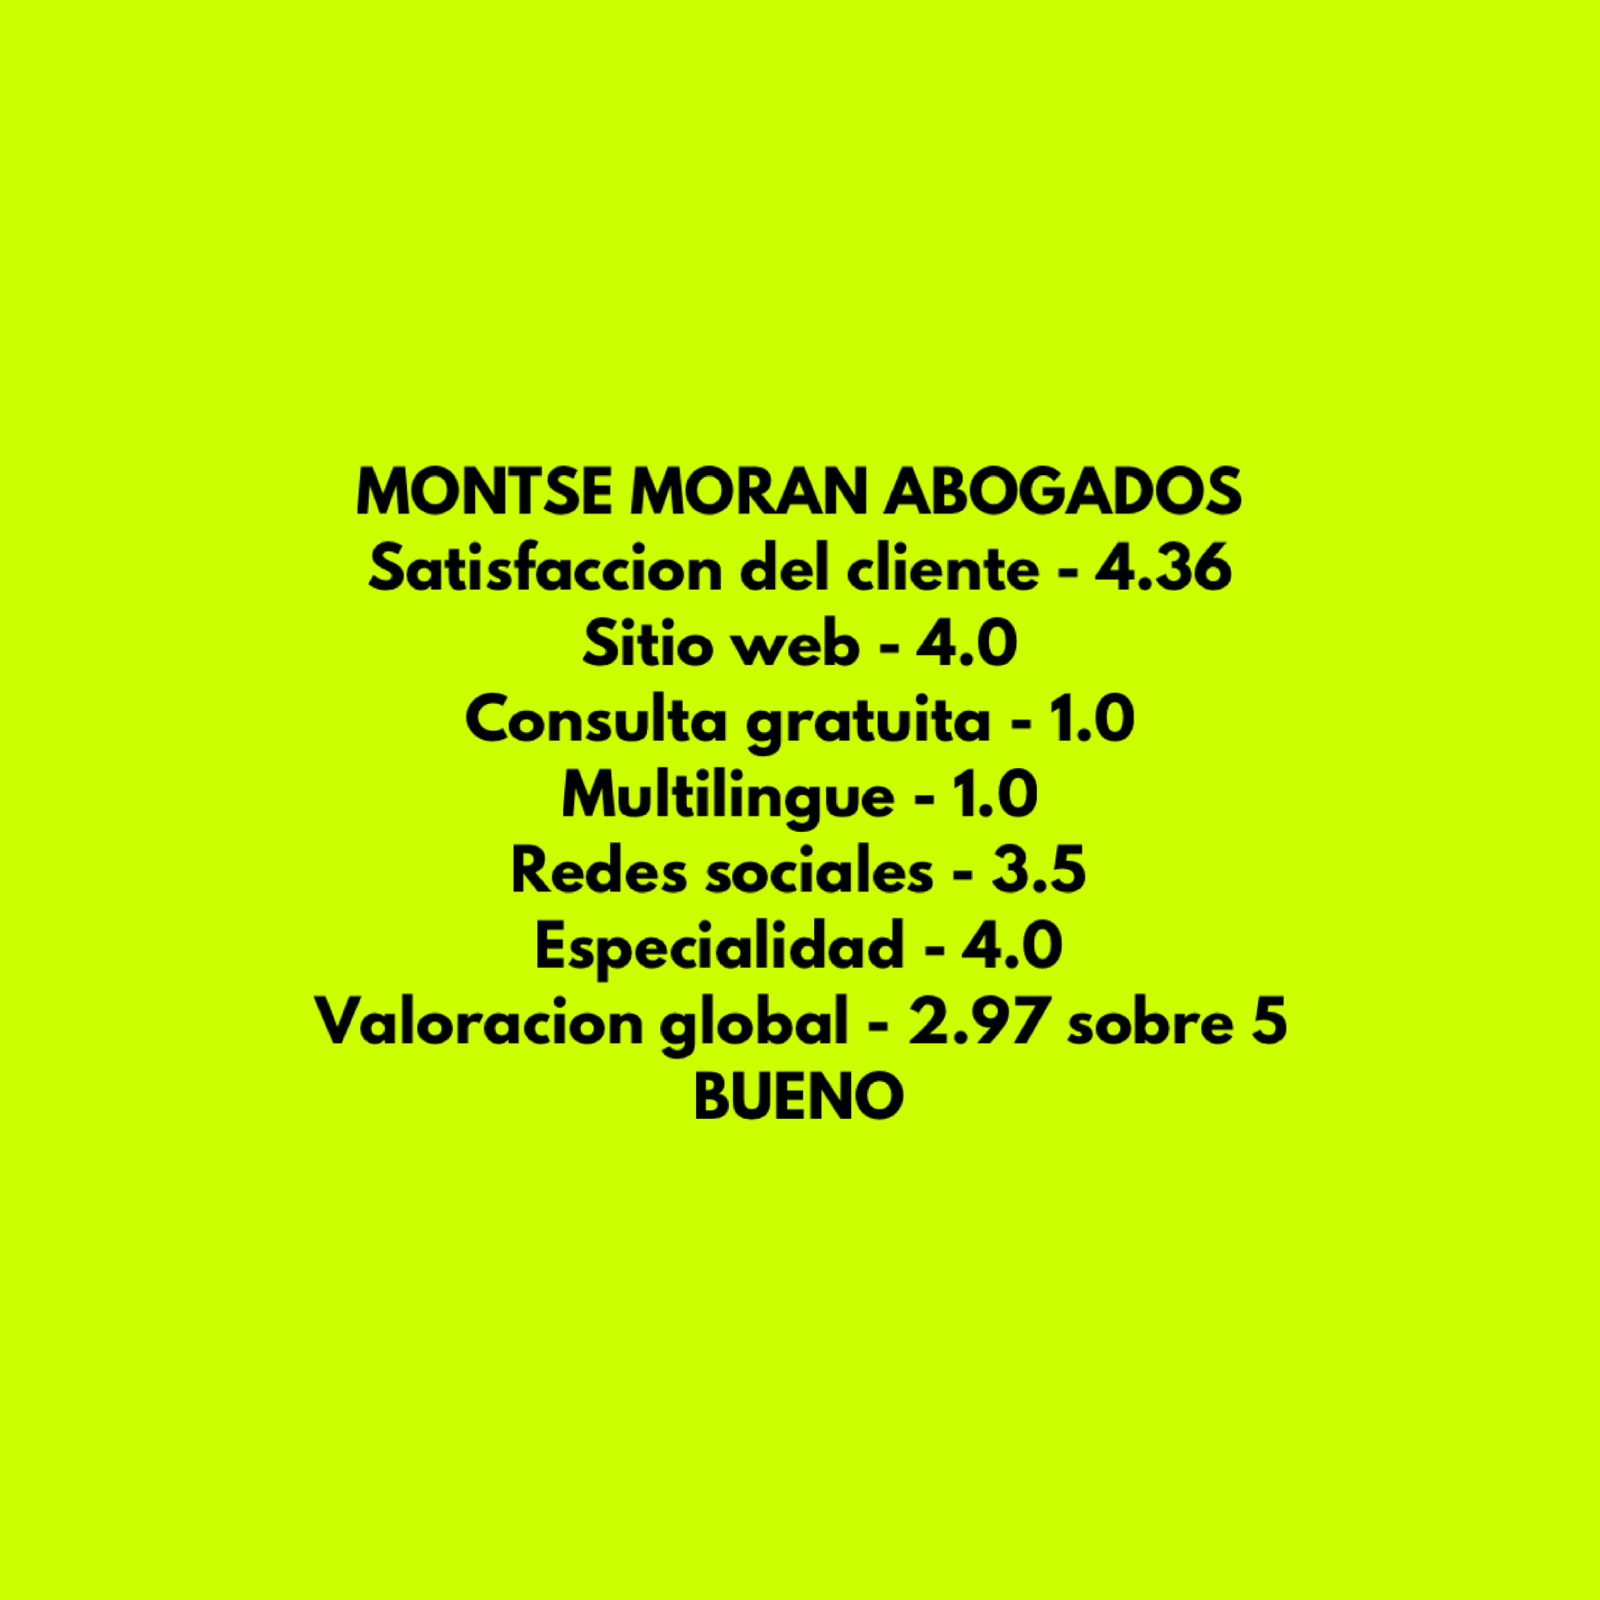 Montse Moran Abogados